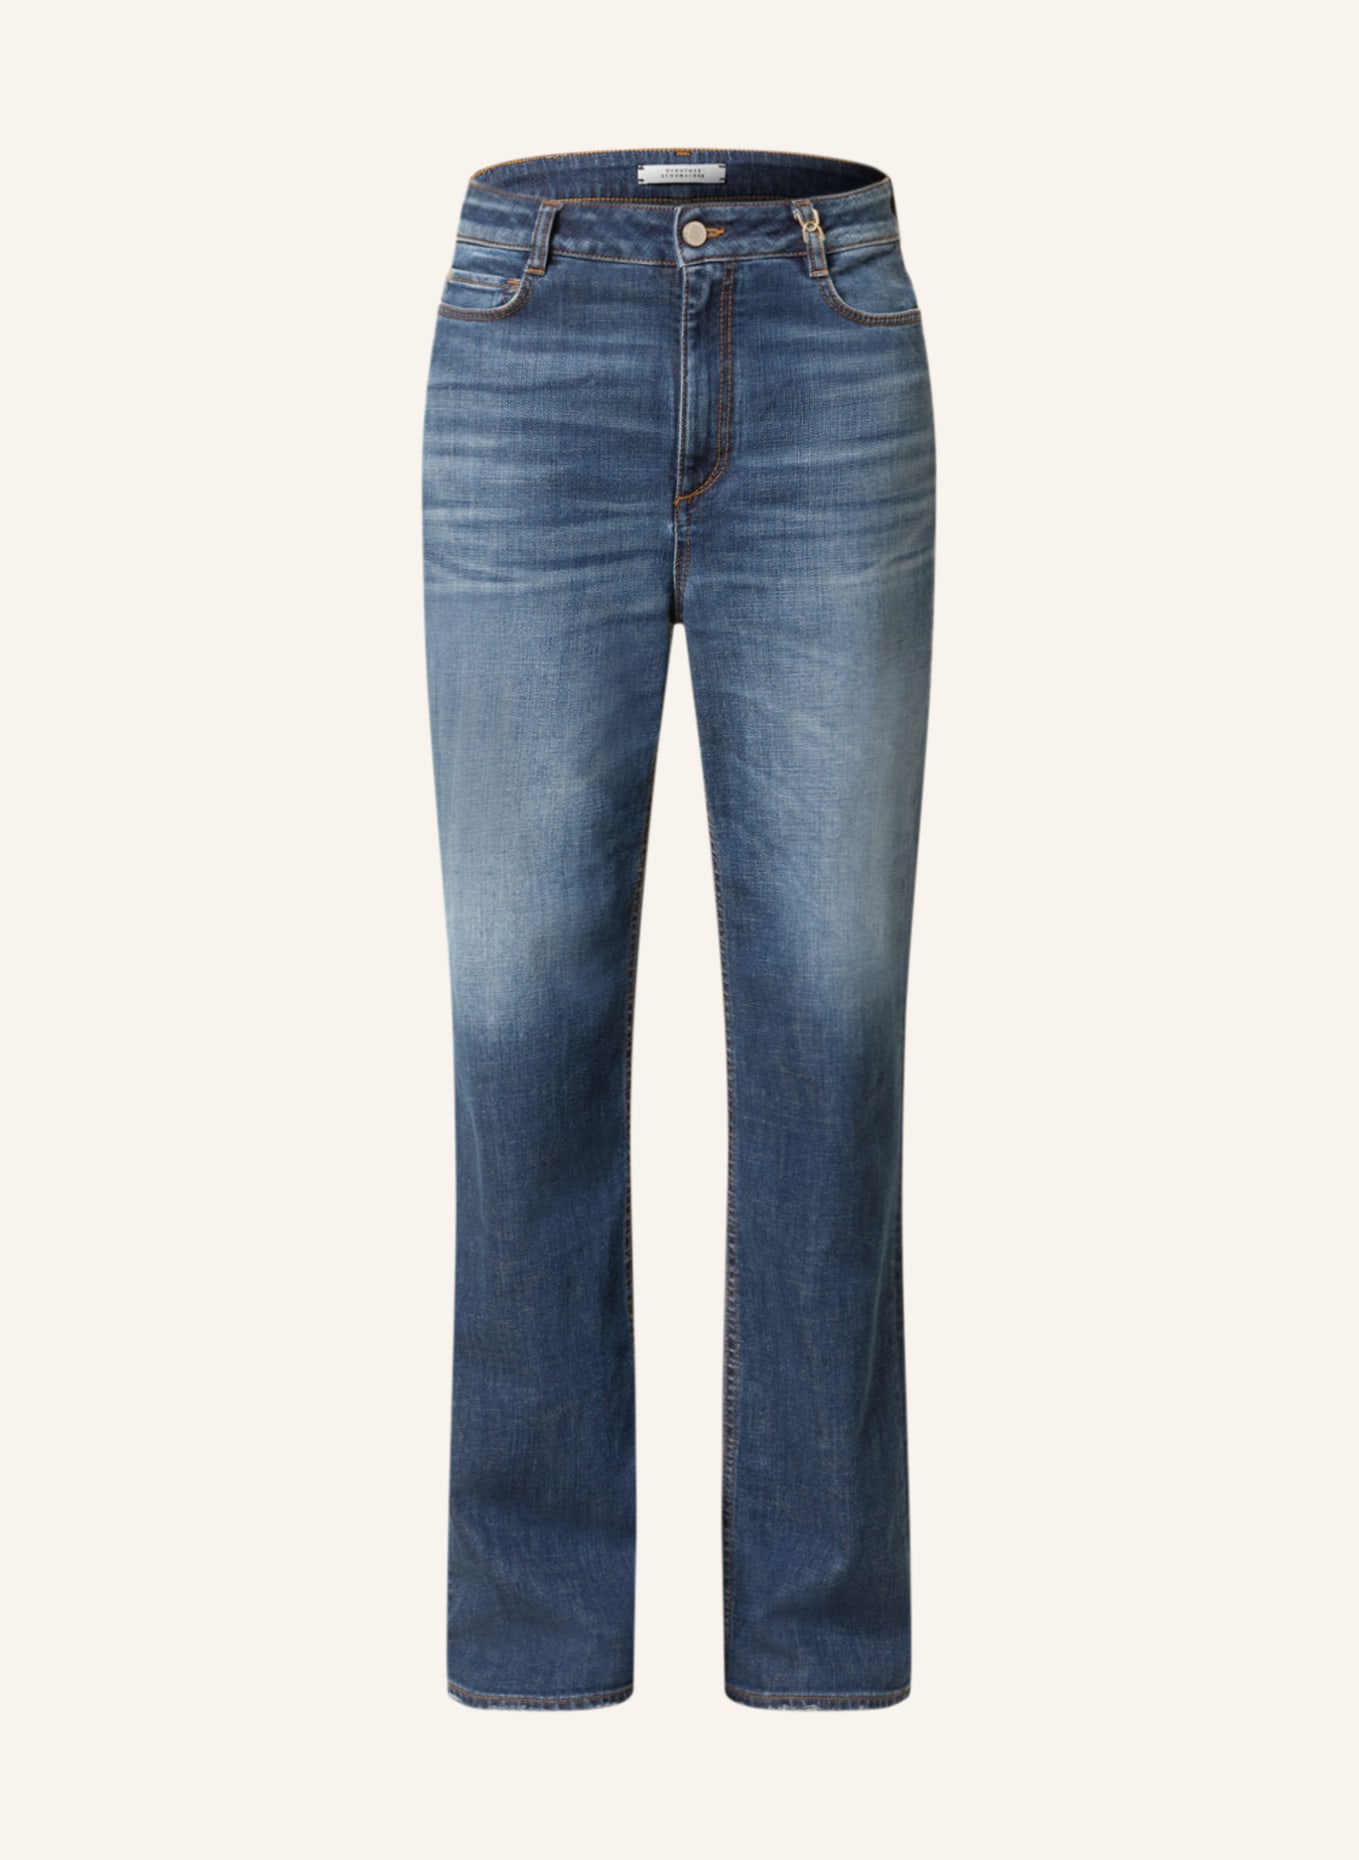 DOROTHEE SCHUMACHER Jeans, Farbe: 866 blue denim (Bild 1)